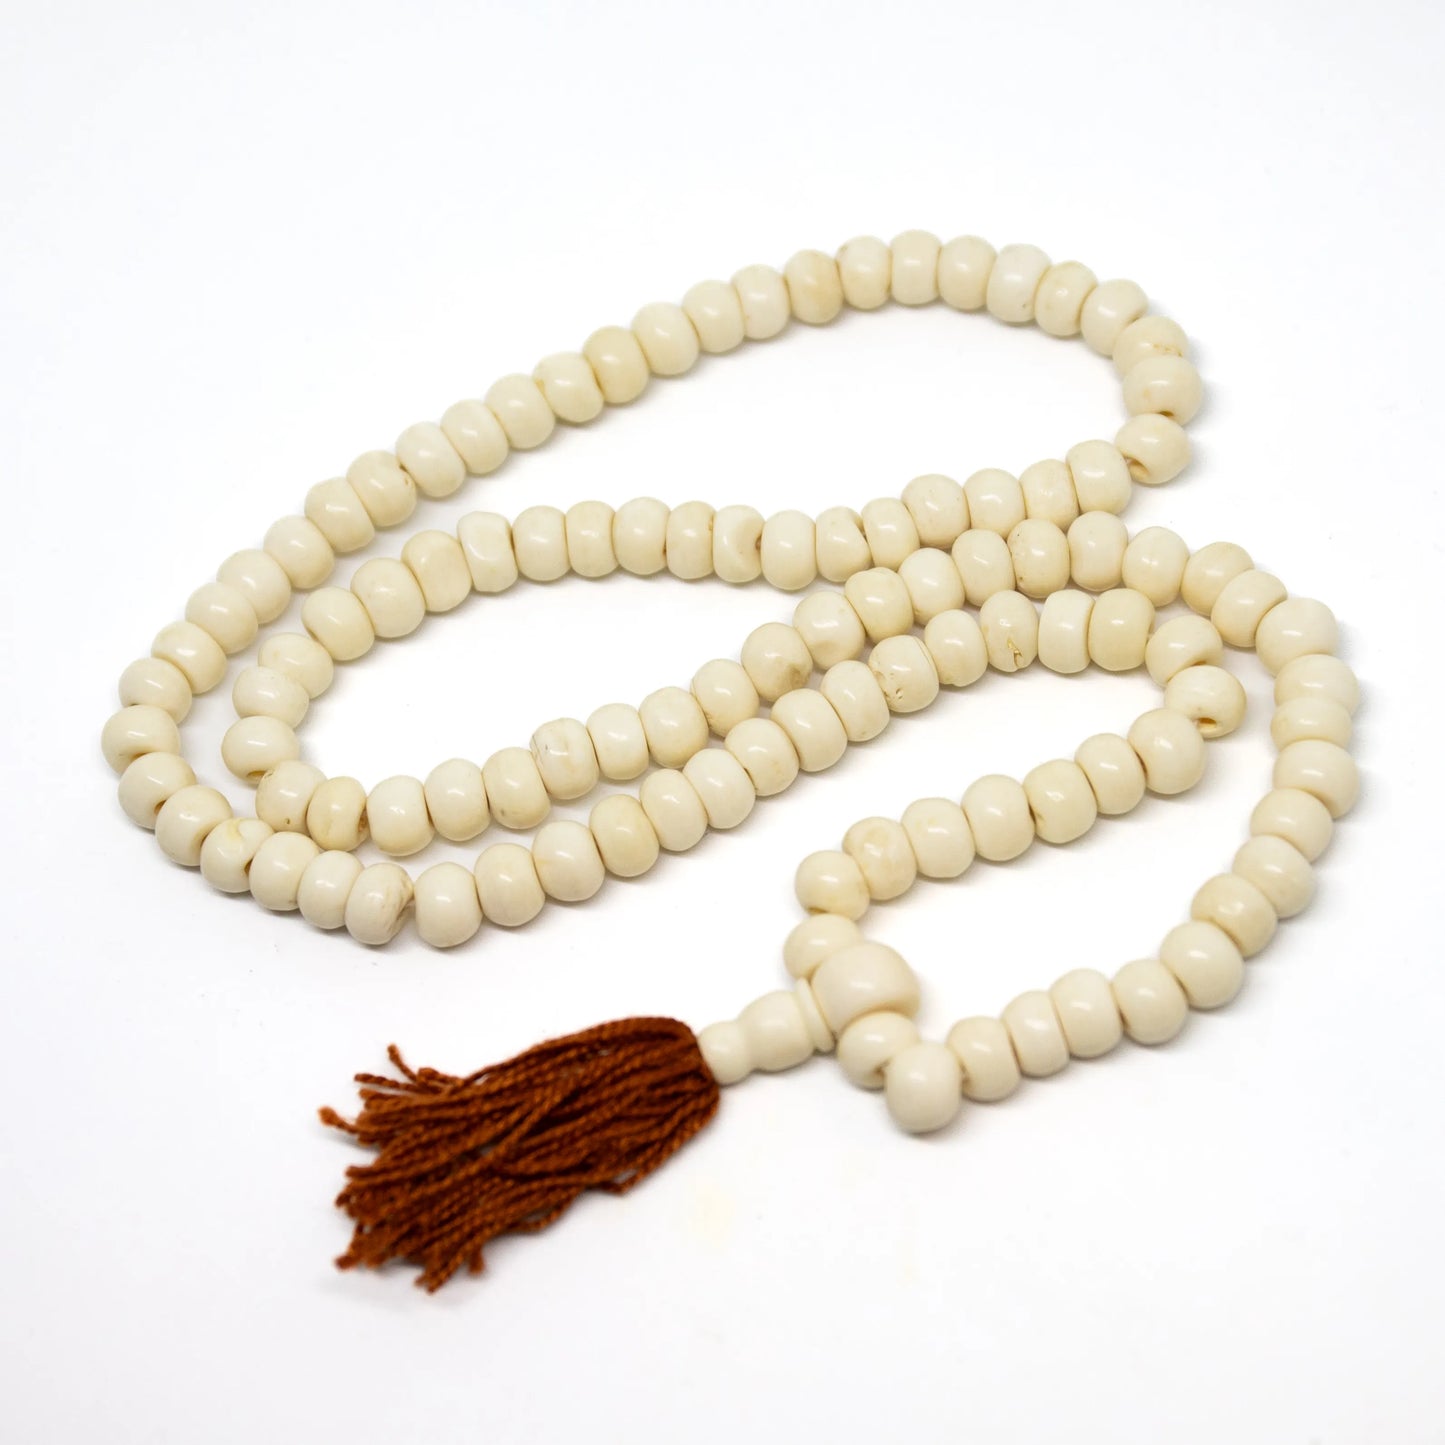 Yak Bone Tibetan 108 Bead Mala Prayer Beads - 6x8mm (1 Pack)